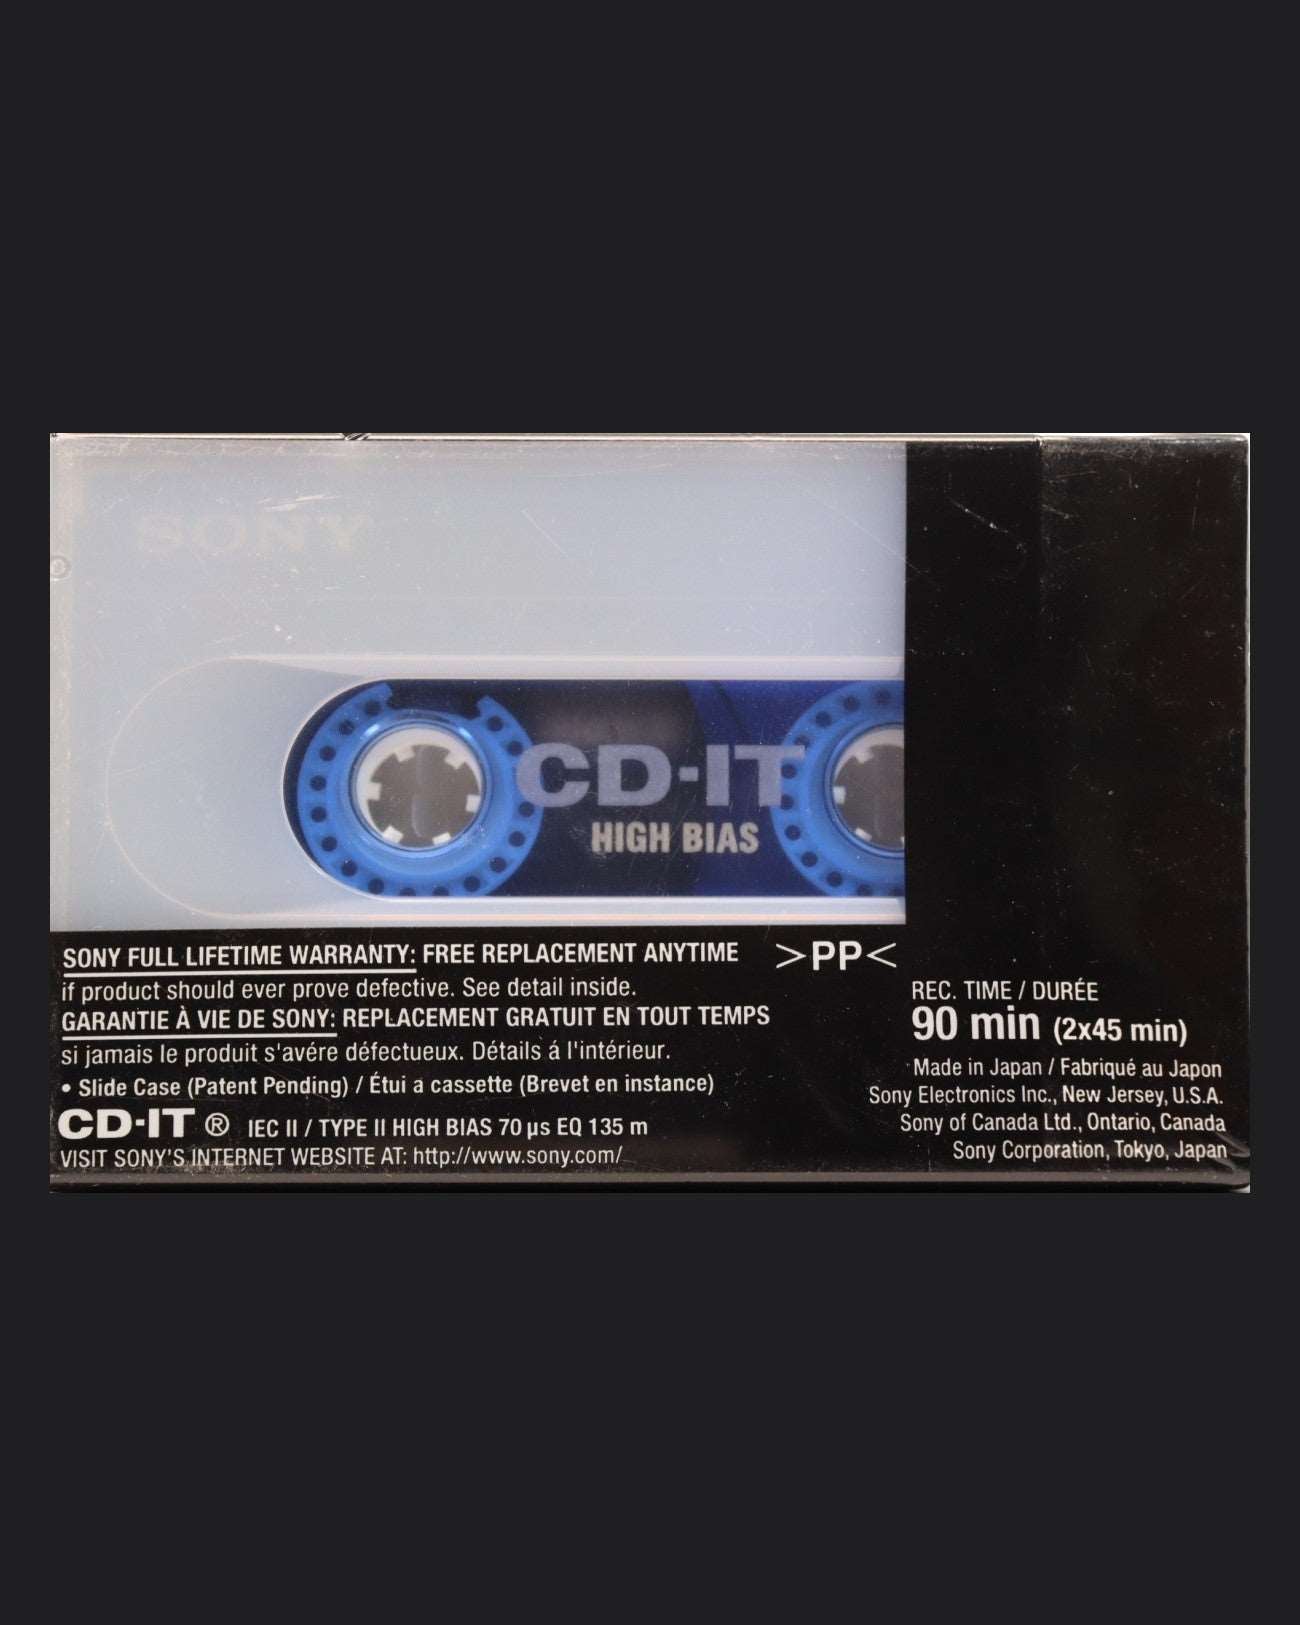 Sony CD-IT (1998-1999 US)